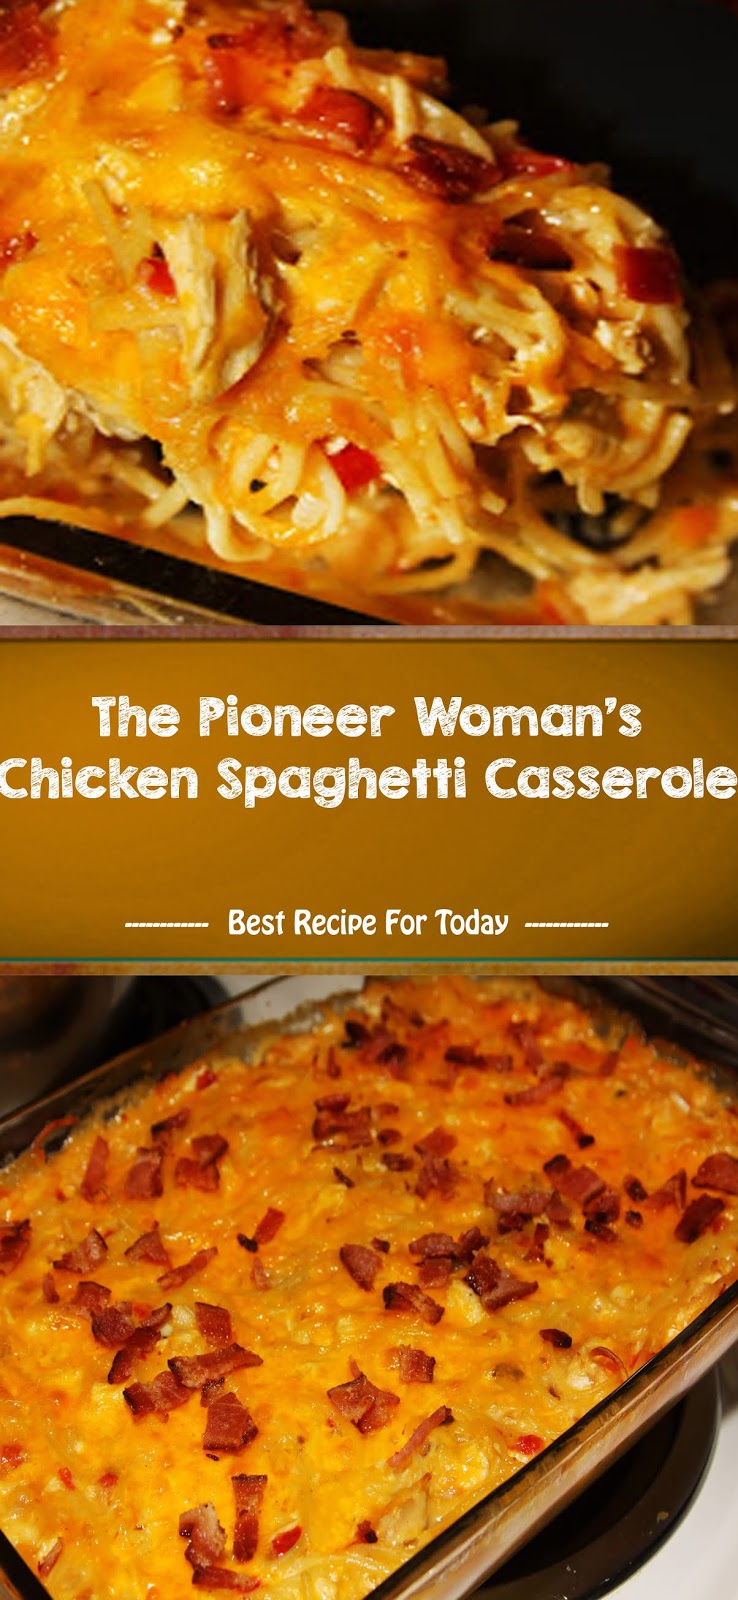 The Pioneer Woman's Chicken Spaghetti Casserole ...